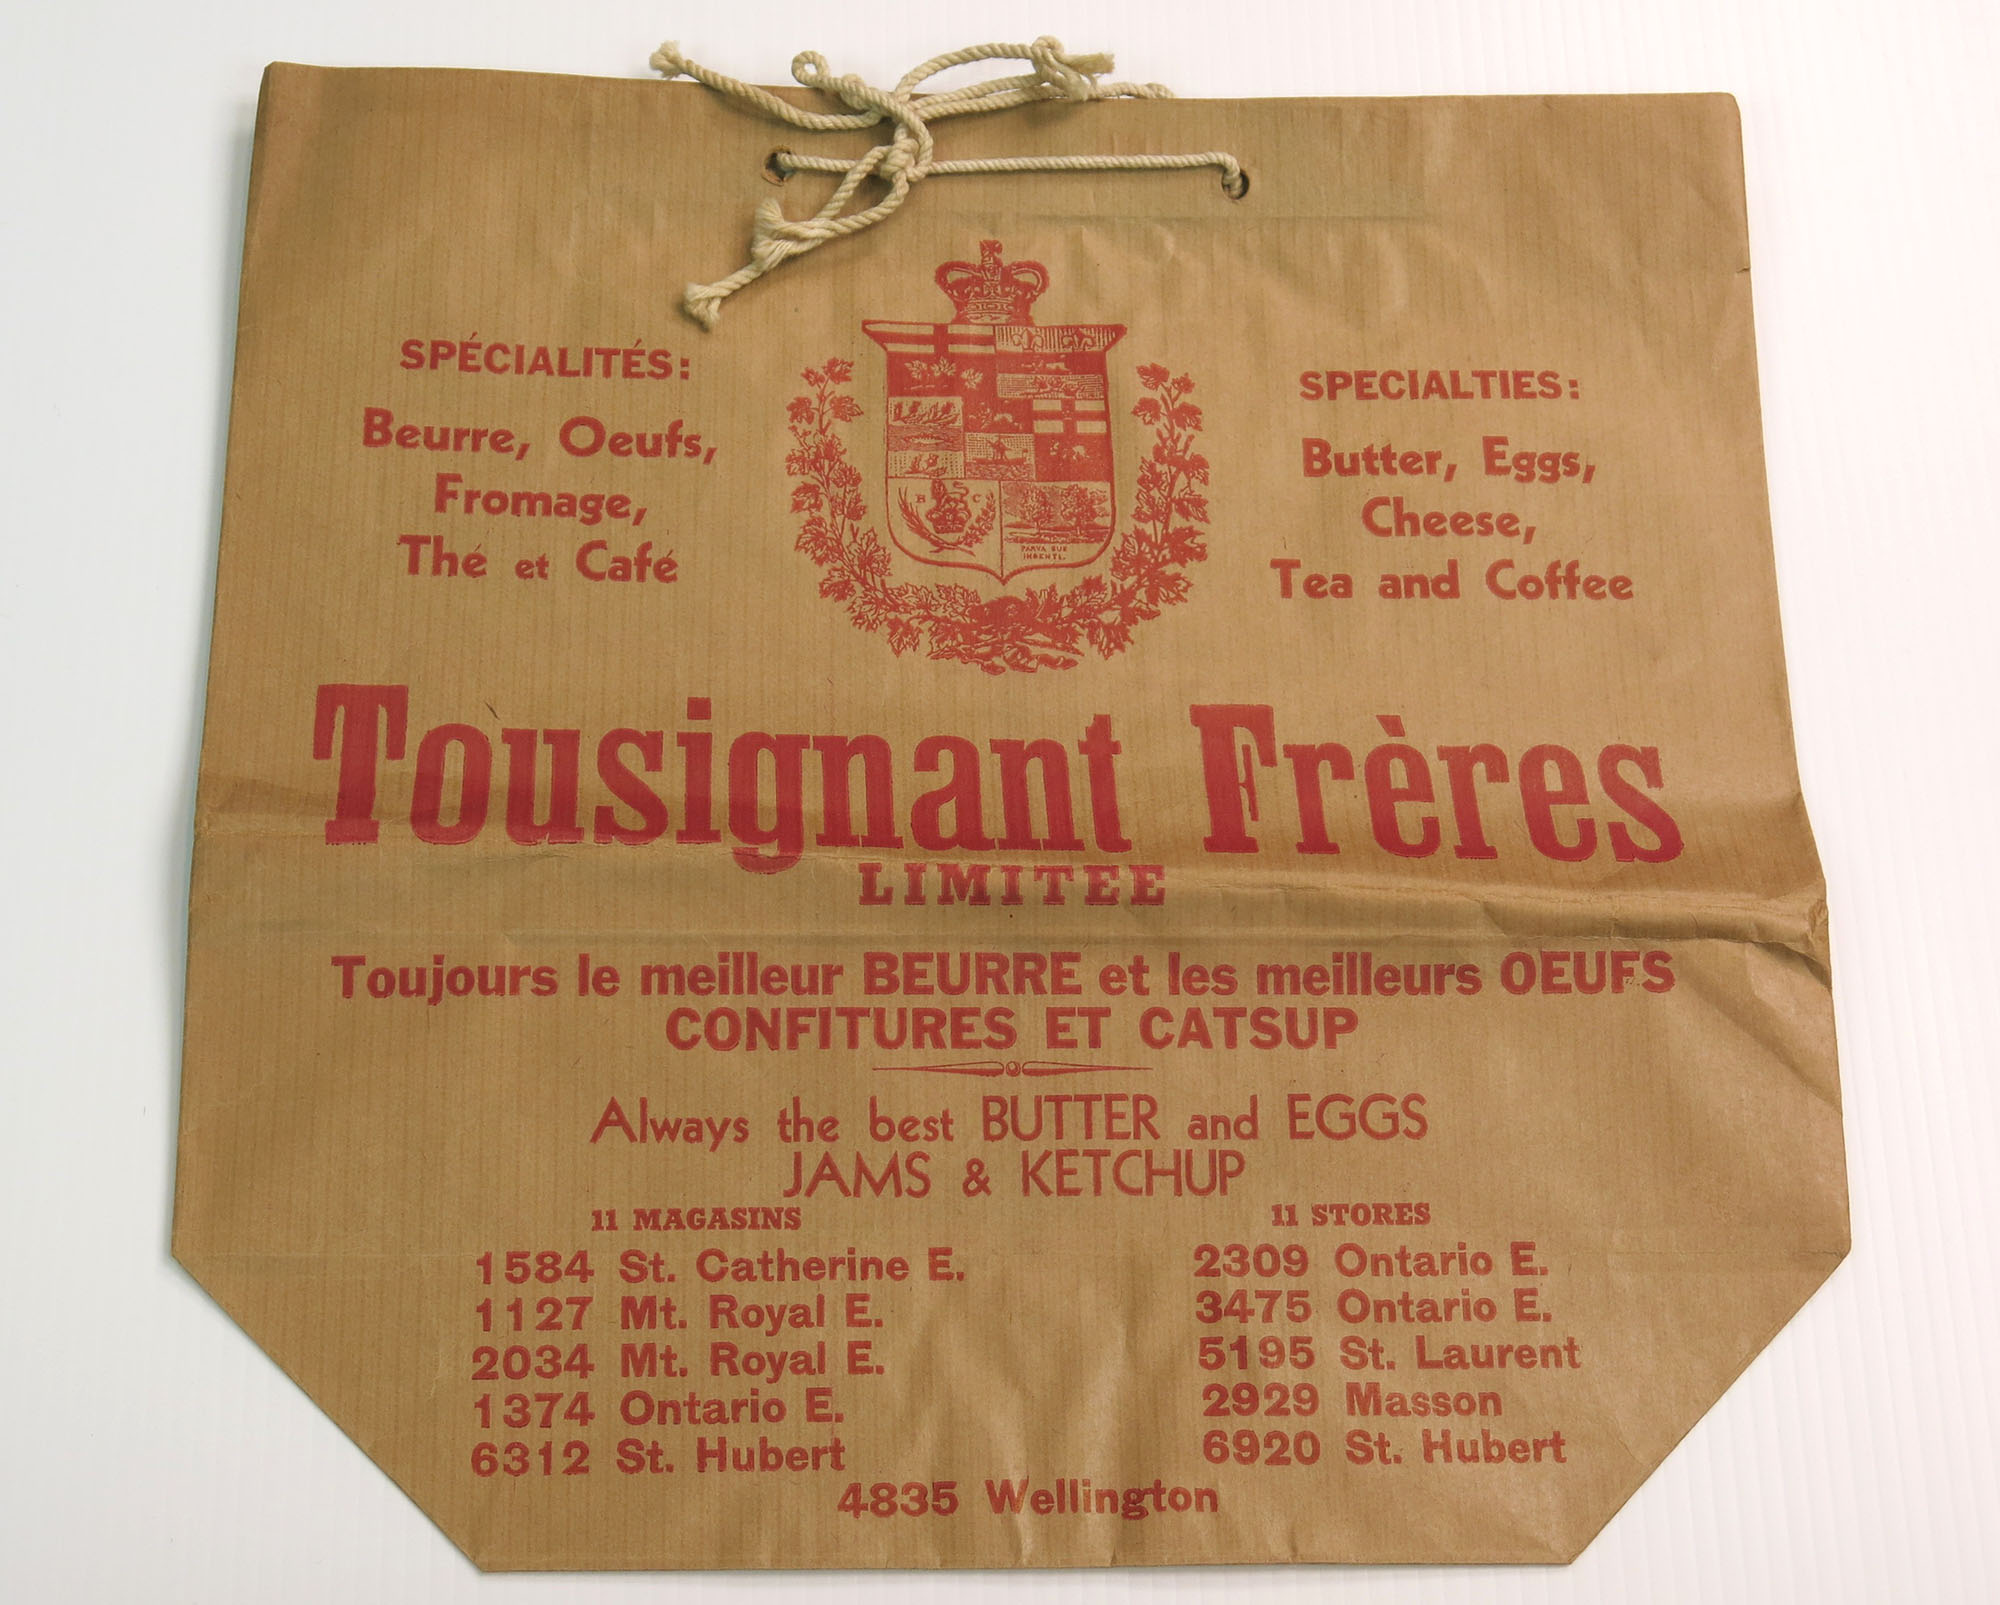 Sac en papier brun, avec des écritures rouges, de l’épicerie Tousignant & Frères. Des poignées en corde beige sont insérées dans le rebord en haut du sac.